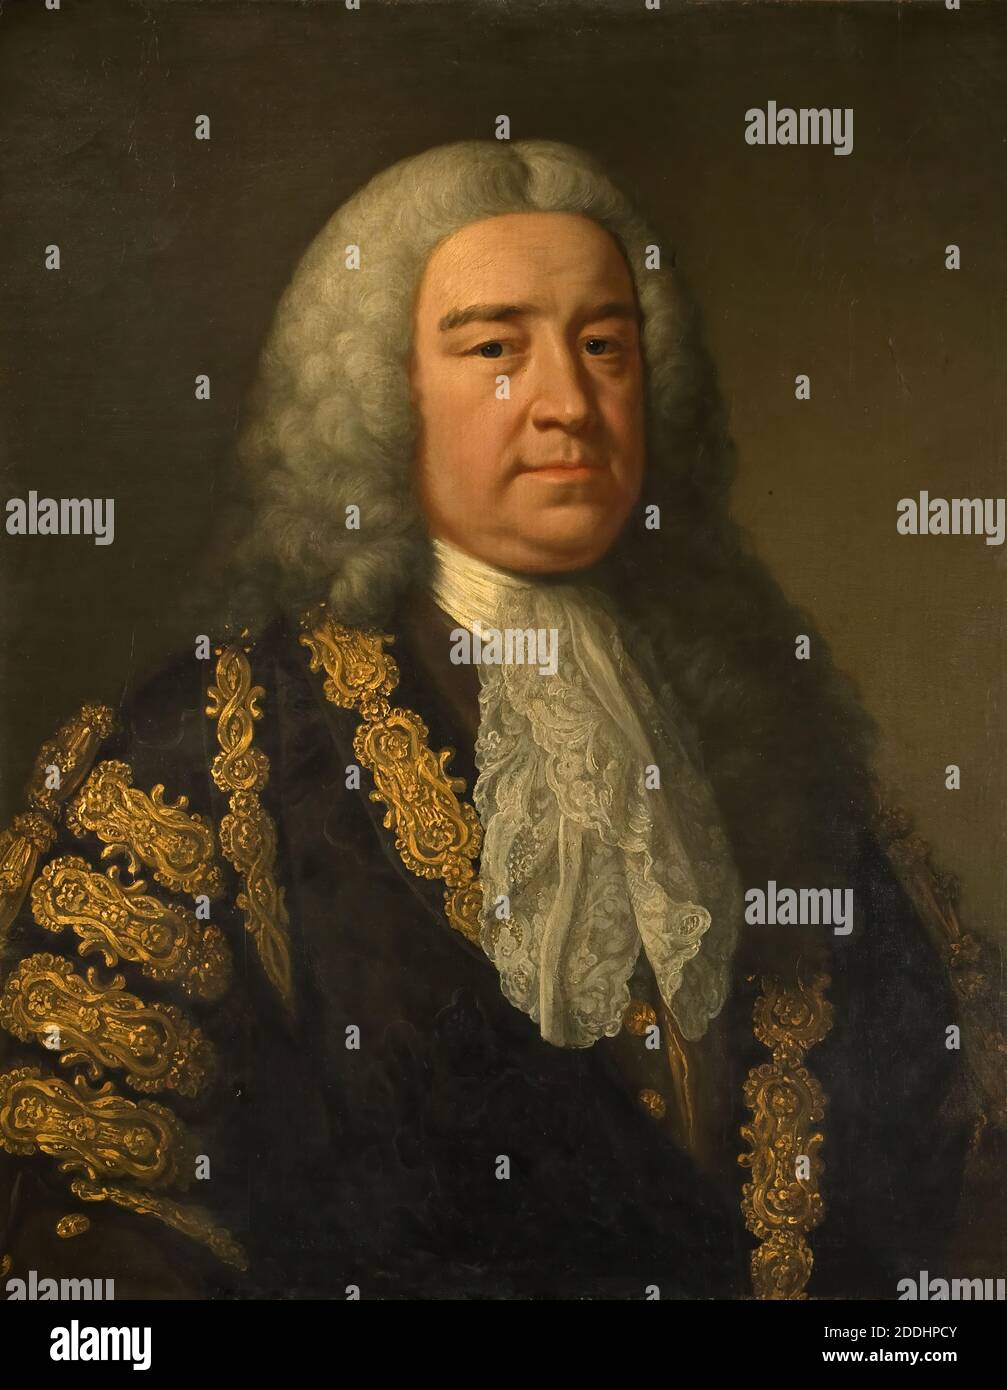 Ritratto del Rt. Henry Pelham (1694-1754) John Shackleton, Henry Pelham FRS (1694-1754) è stato uno statista britannico di Whig, che ha servito come primo ministro della Gran Bretagna dal 27 agosto 1743 fino alla sua morte. Pelham è generalmente considerato essere stato il terzo primo ministro britannico dopo Sir Robert Walpole e il conte di Wilmington., dipinto ad olio, Ritratto, tessili, Merletto, Costume, Wig Foto Stock